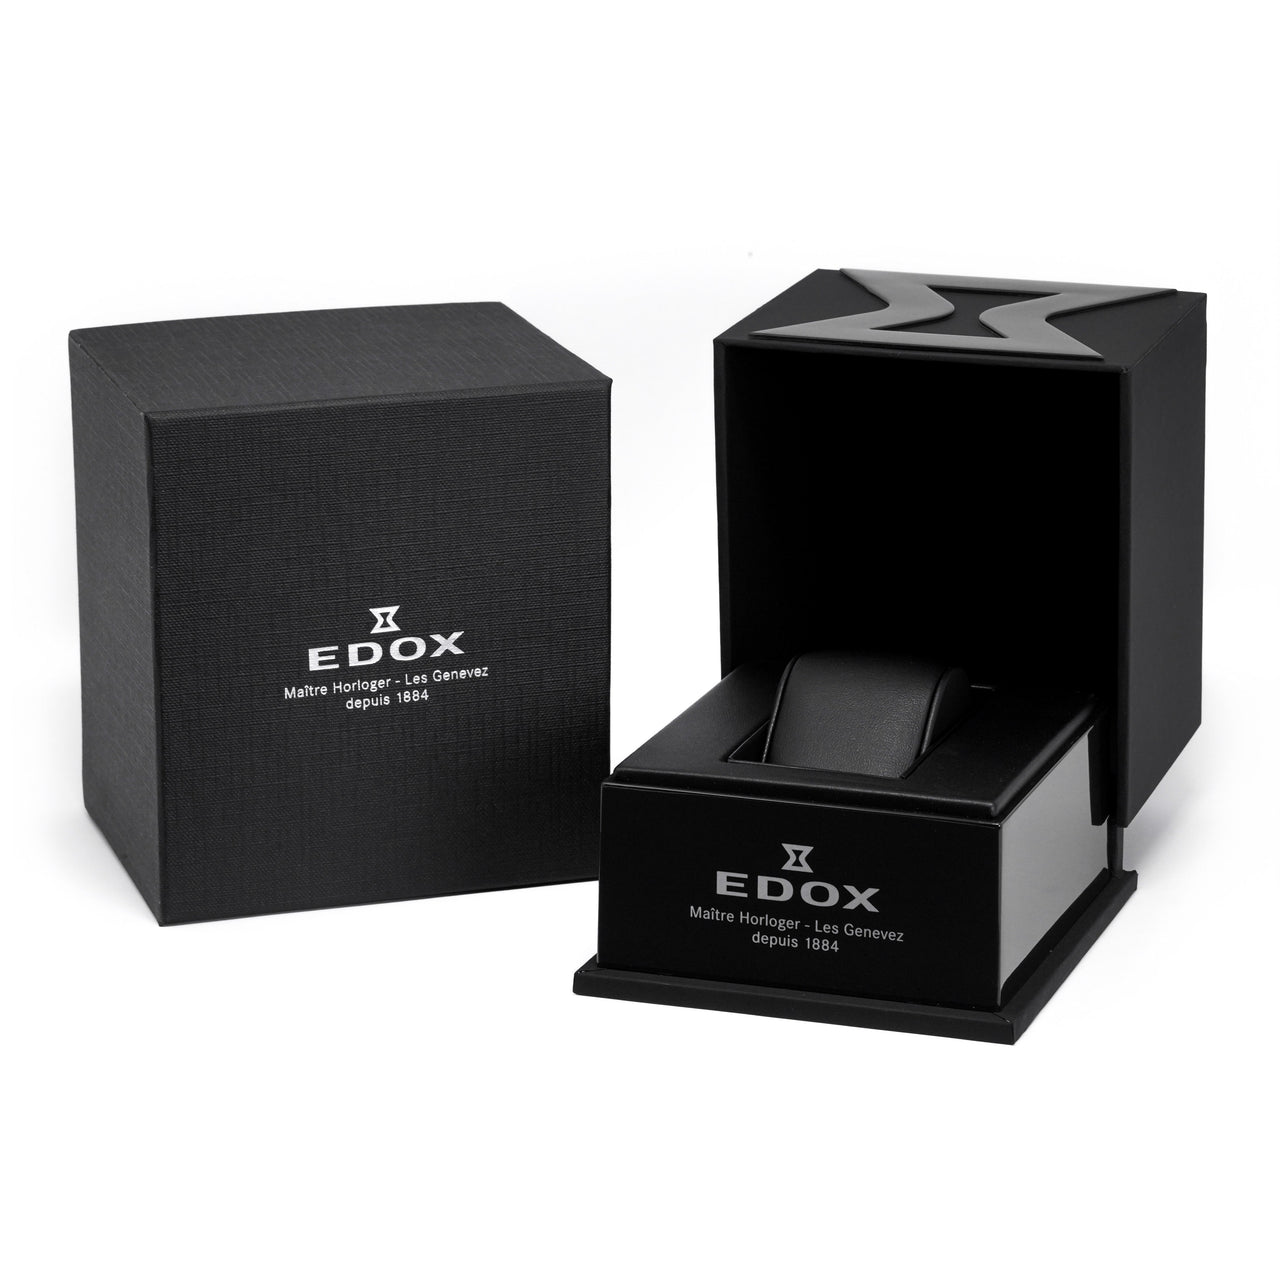 Edox Les Bèmonts Ladies Rose Gold Silver Watch 57004-37R-AIR